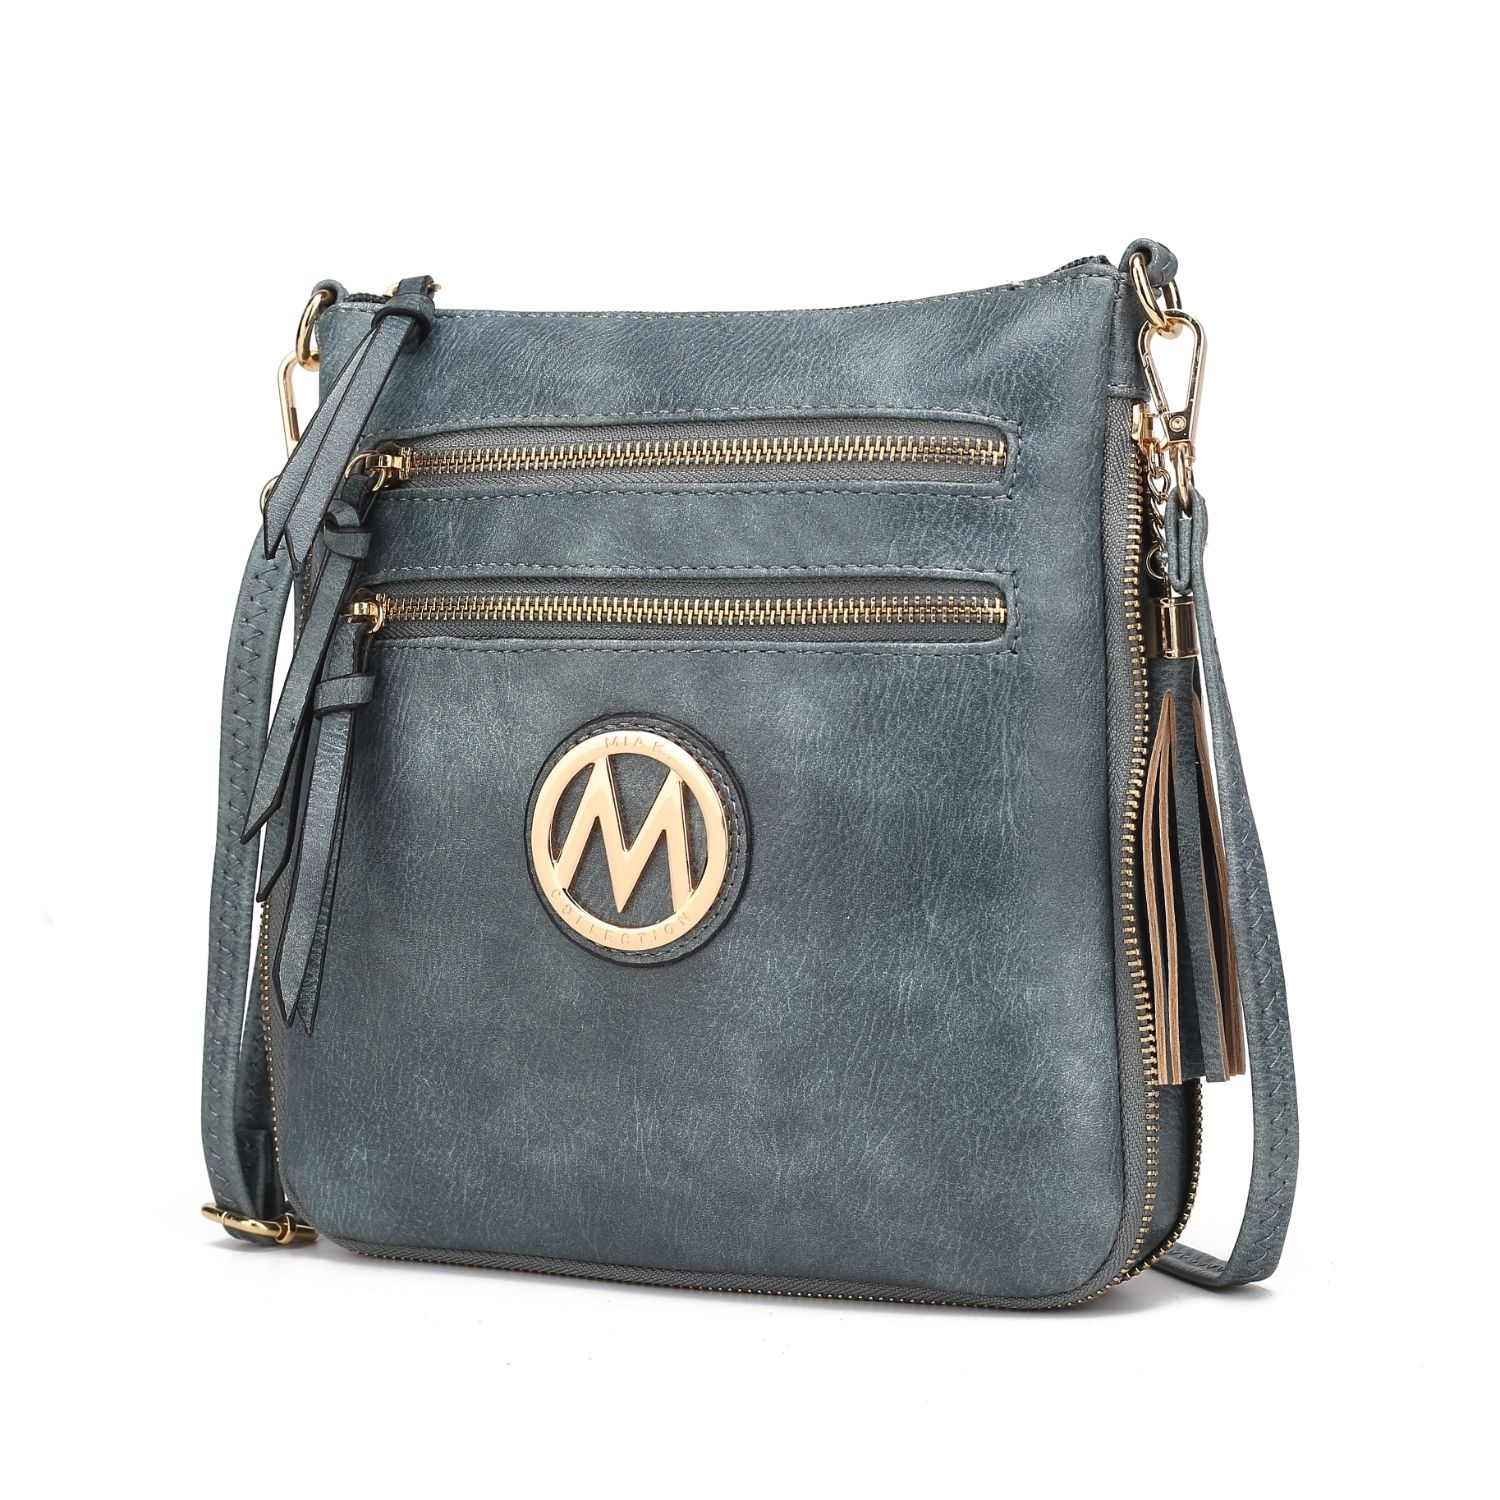 MKF Collection Angelina Crossbody Handbag By Mia K. - Royal Blue